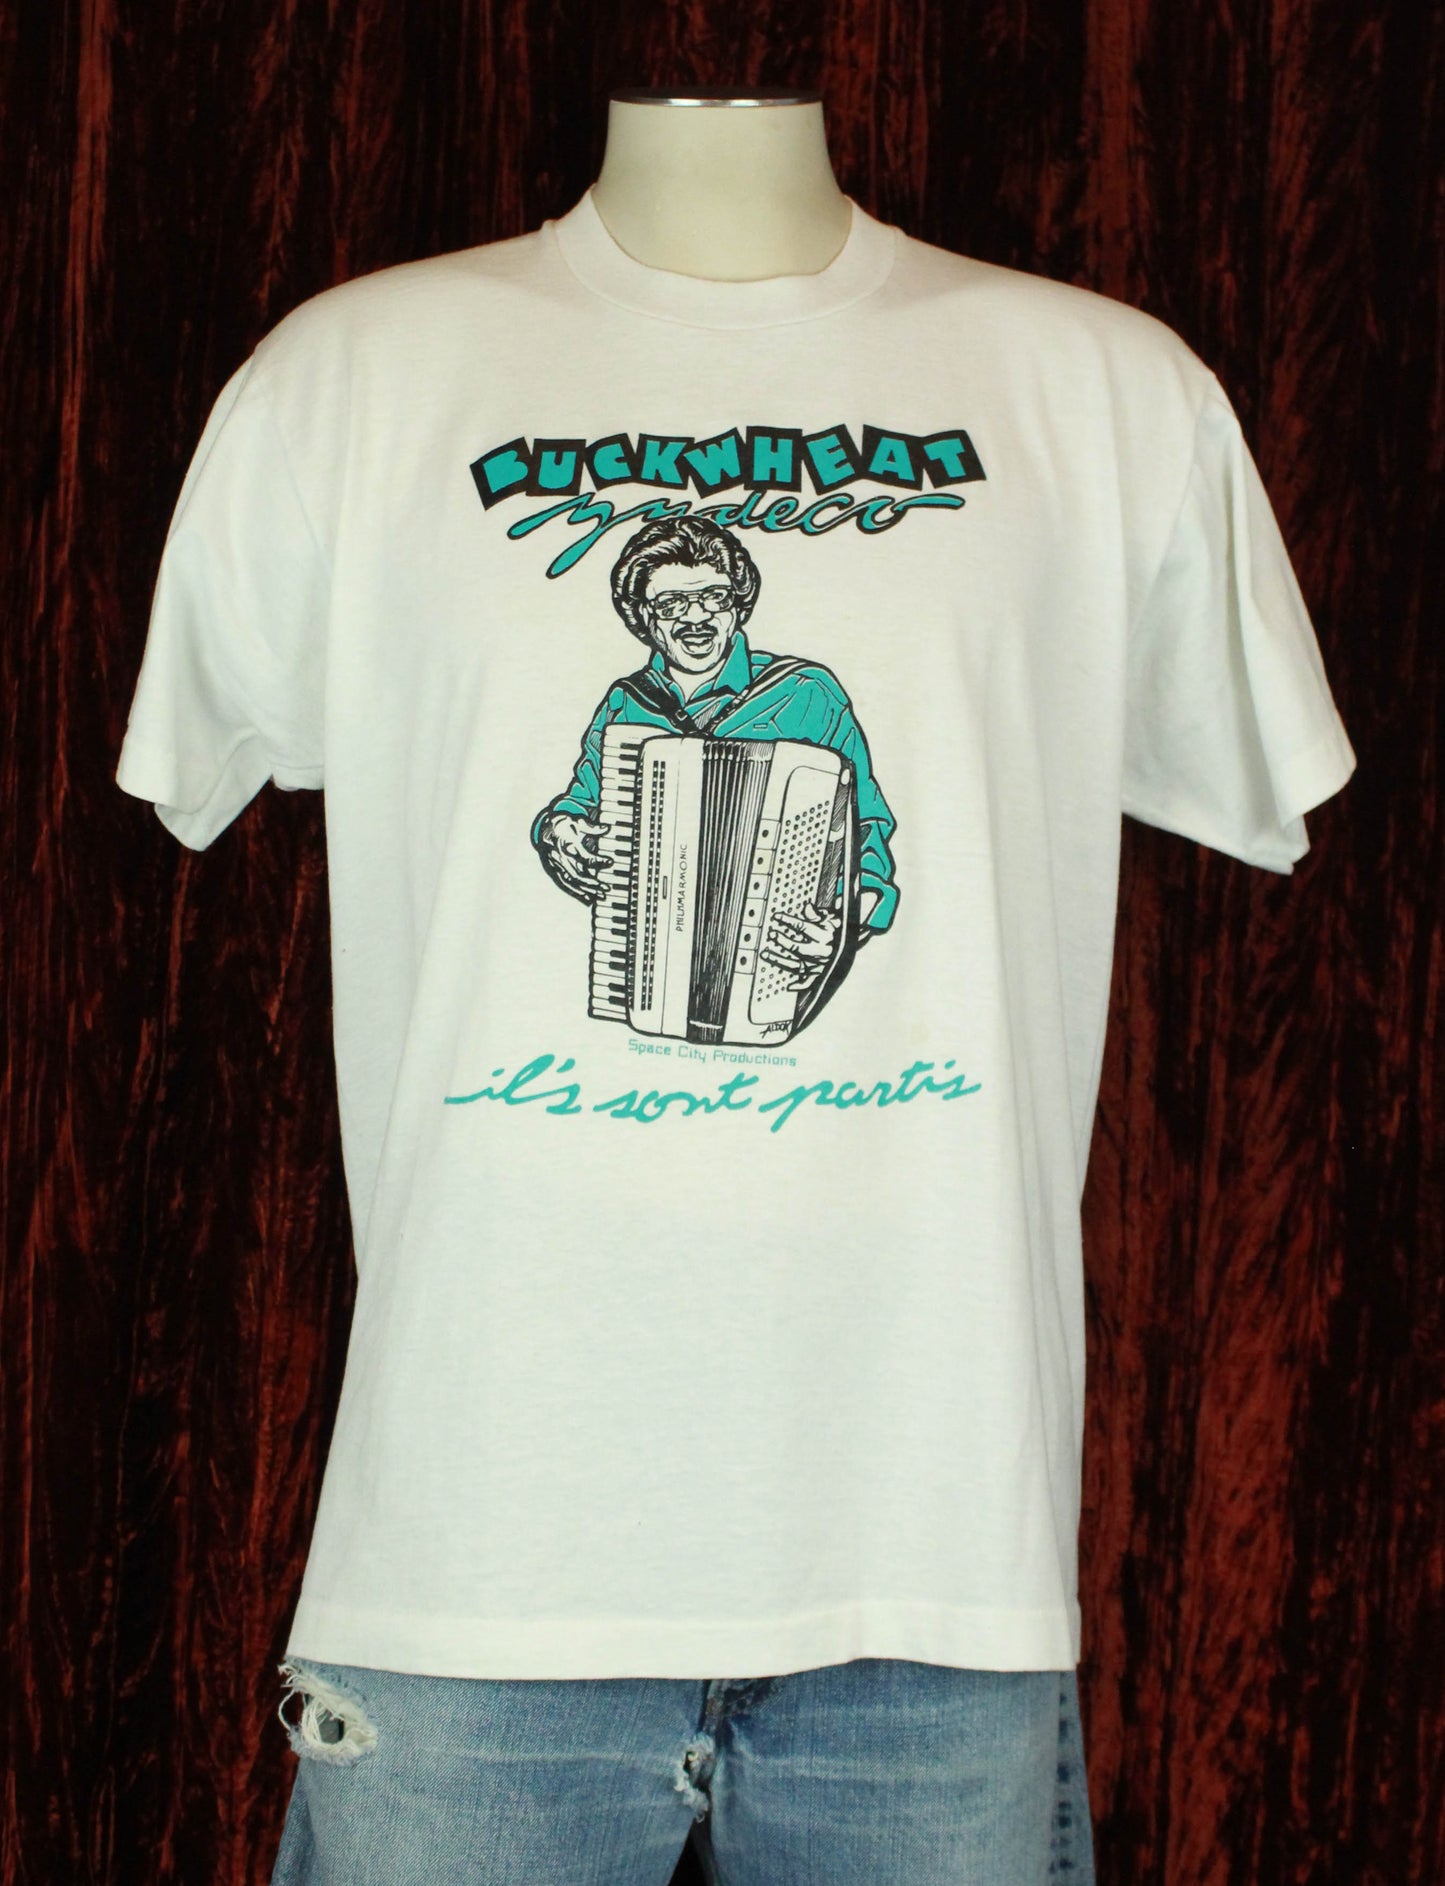 Vintage Buckwheat Zydeco Concert T Shirt 80's Ils Sont Partis - XL